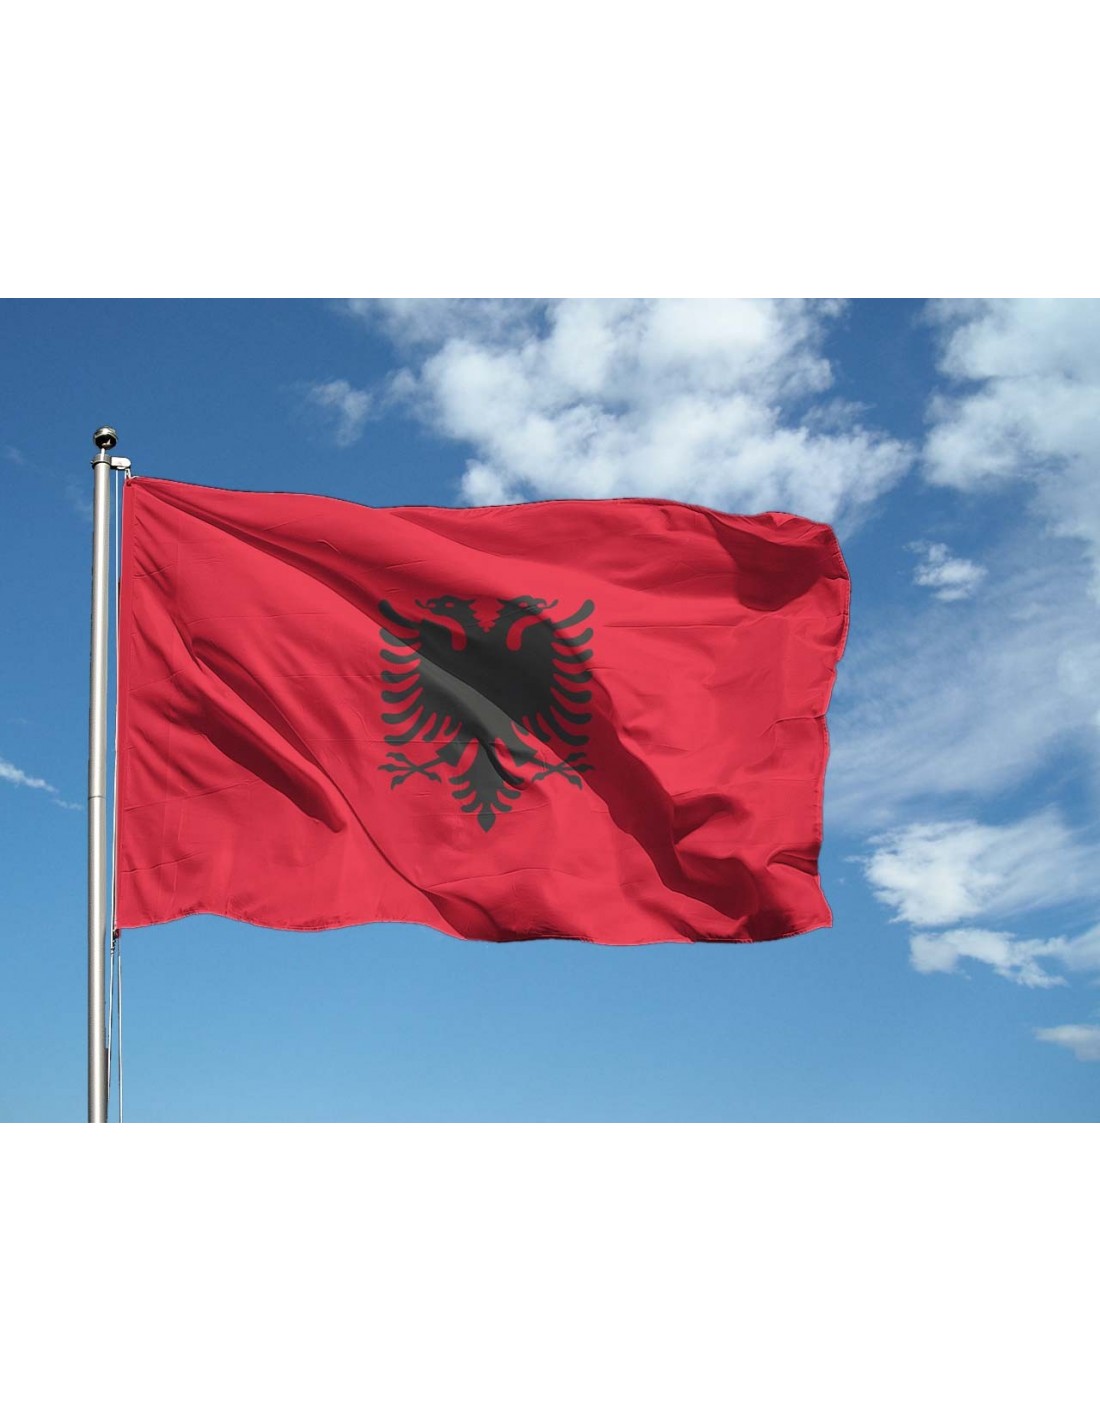 Bandiera Albania in vendita, bandiera albanese